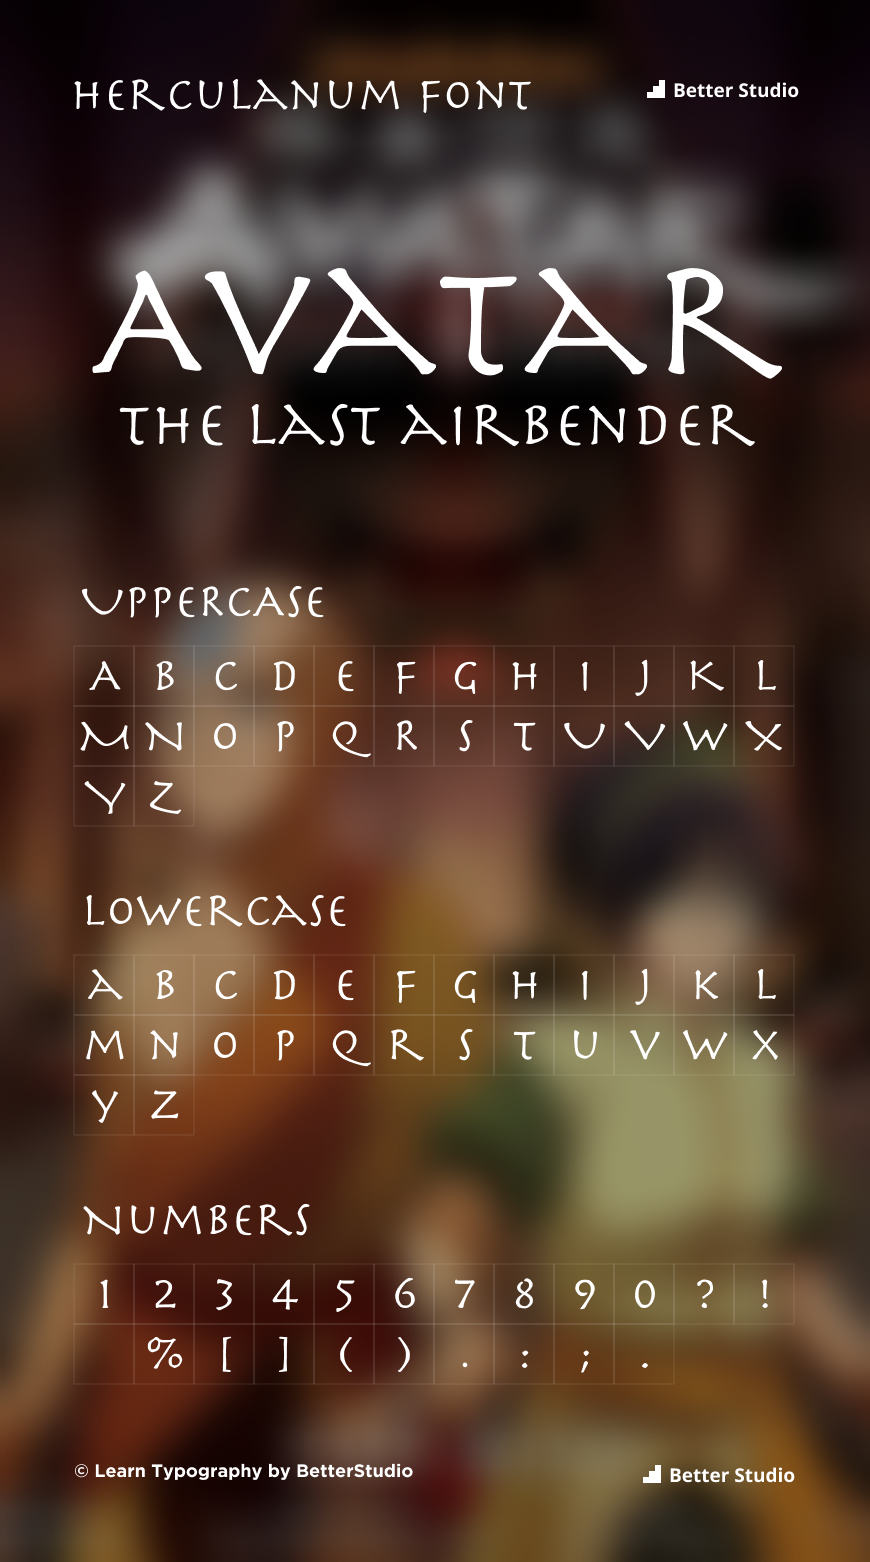 Avatar Font Generator  FREE Download  FontBolt